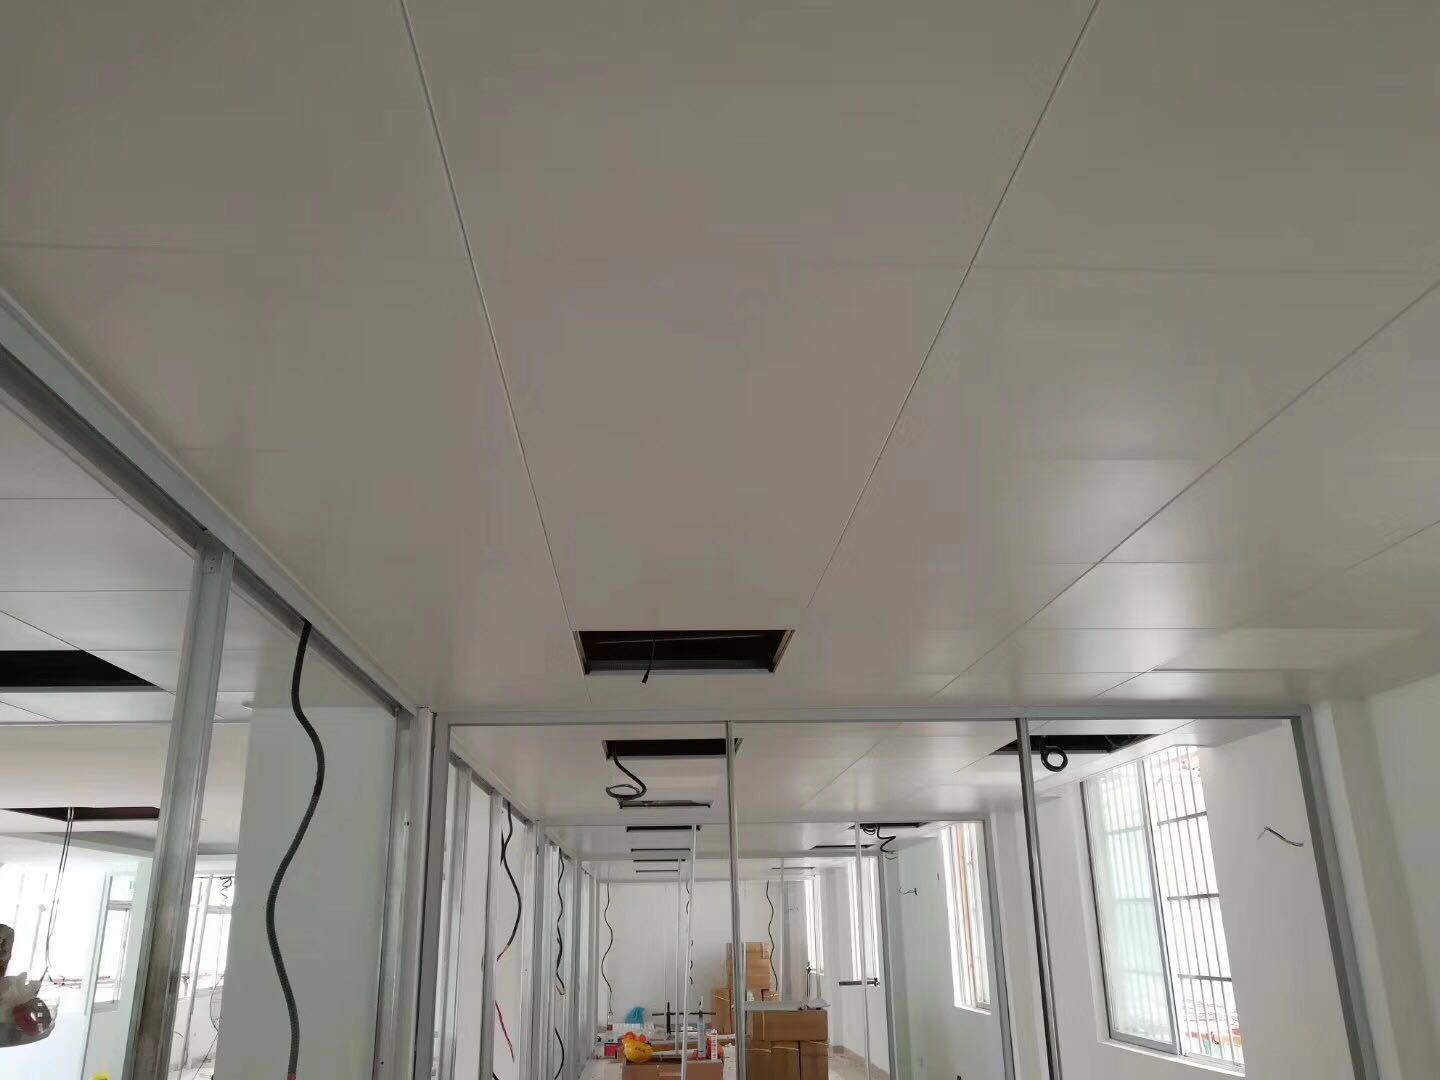 集成吊顶铝扣板大板厨房卫生间房间客厅造型天花板蜂窝板效果二级-阿里巴巴